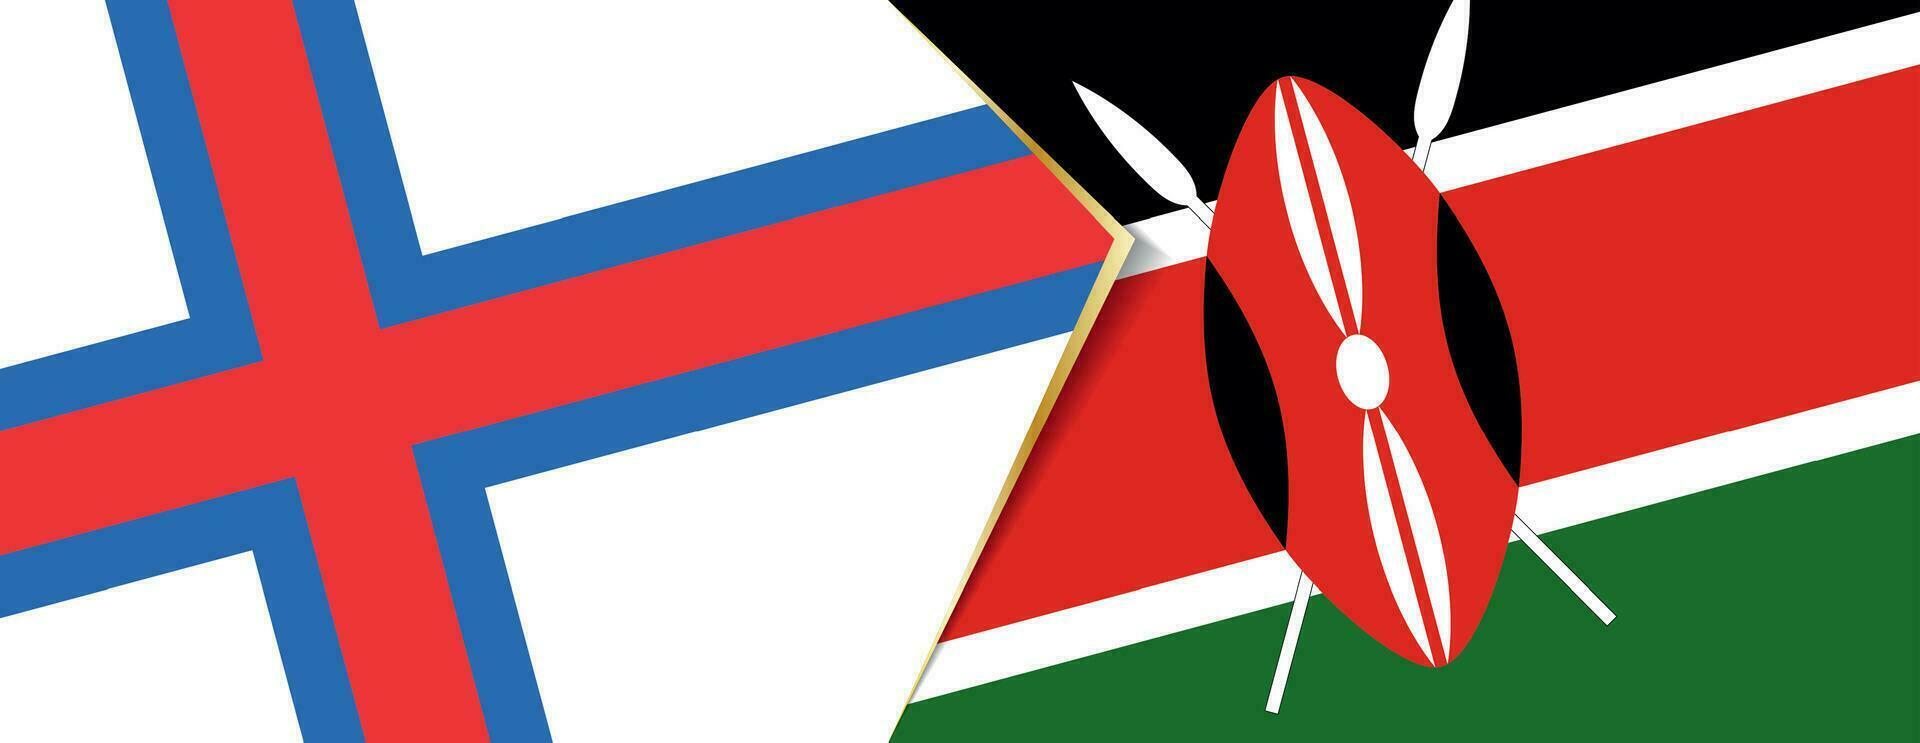 faroe öar och kenya flaggor, två vektor flaggor.